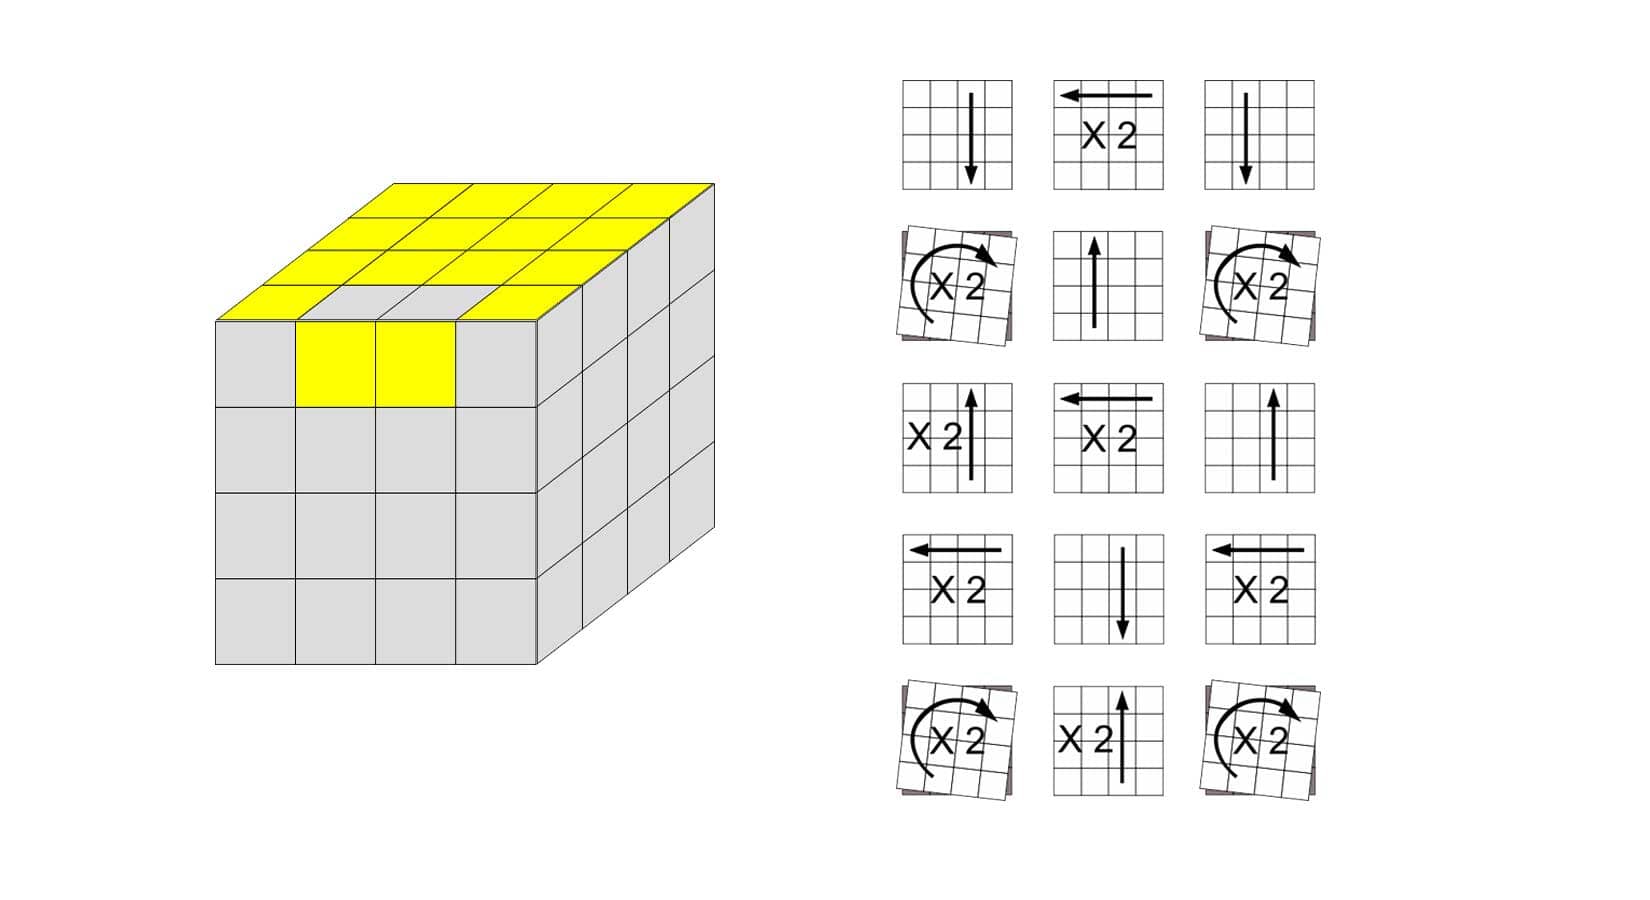 How to solve the 4x4 Rubik's Cube - Beginner's method